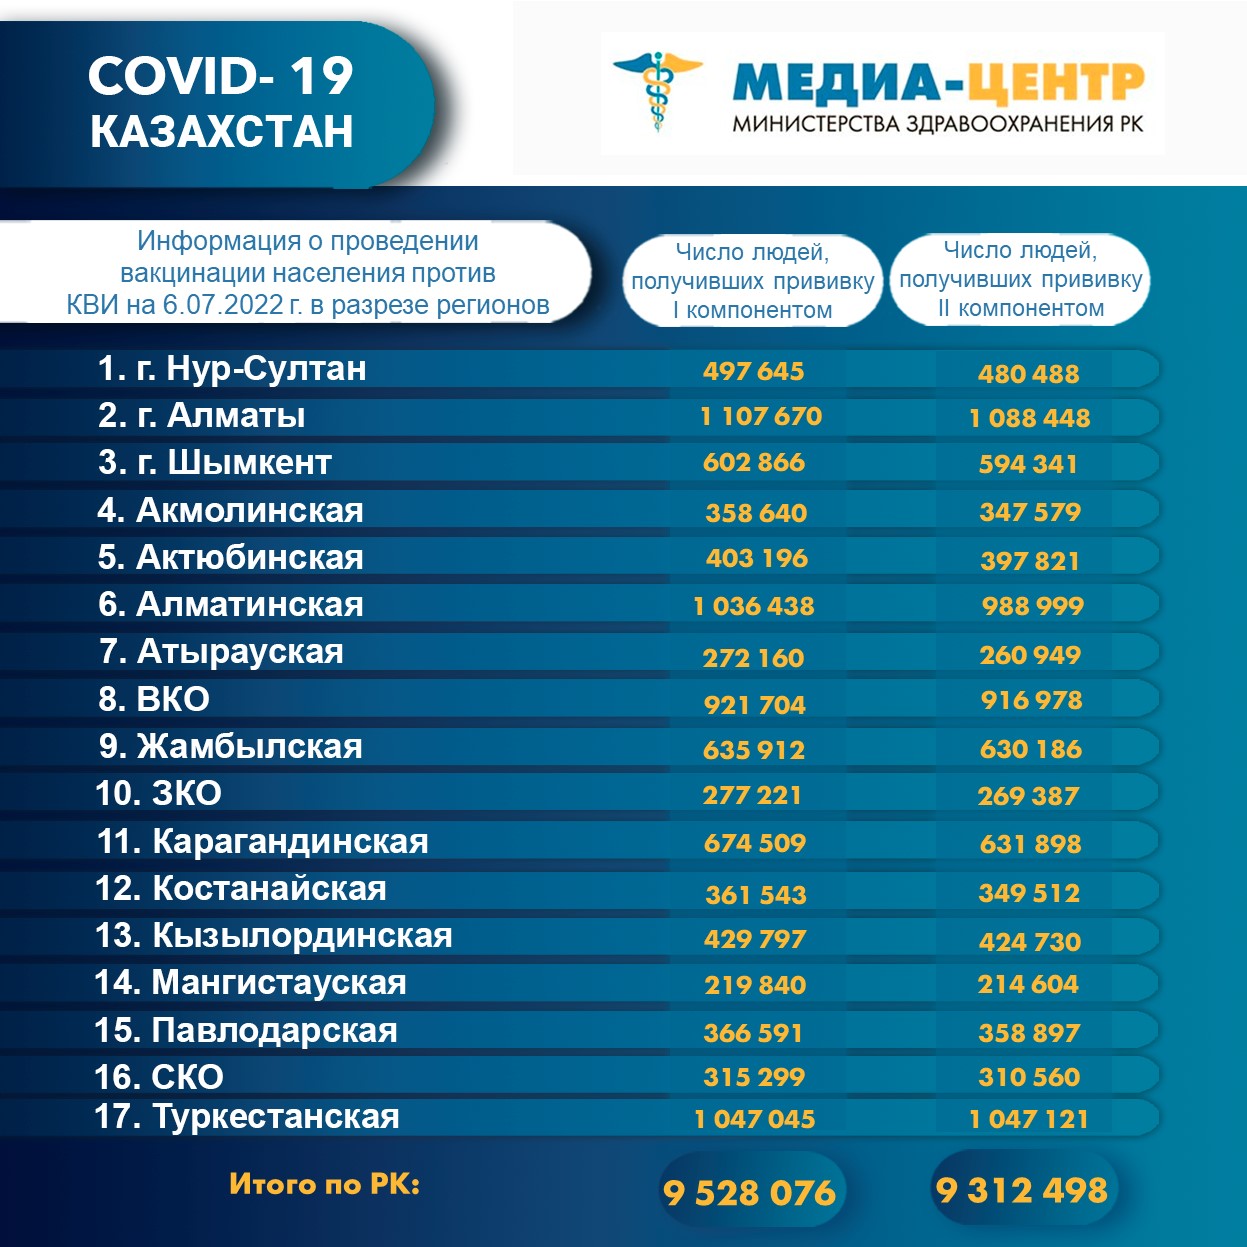 I компонентом 9 528 076 человек провакцинировано в Казахстане на 6.07.2022 г, II компонентом 9 312 498 человек. Ревакцинировано – 4 831 113